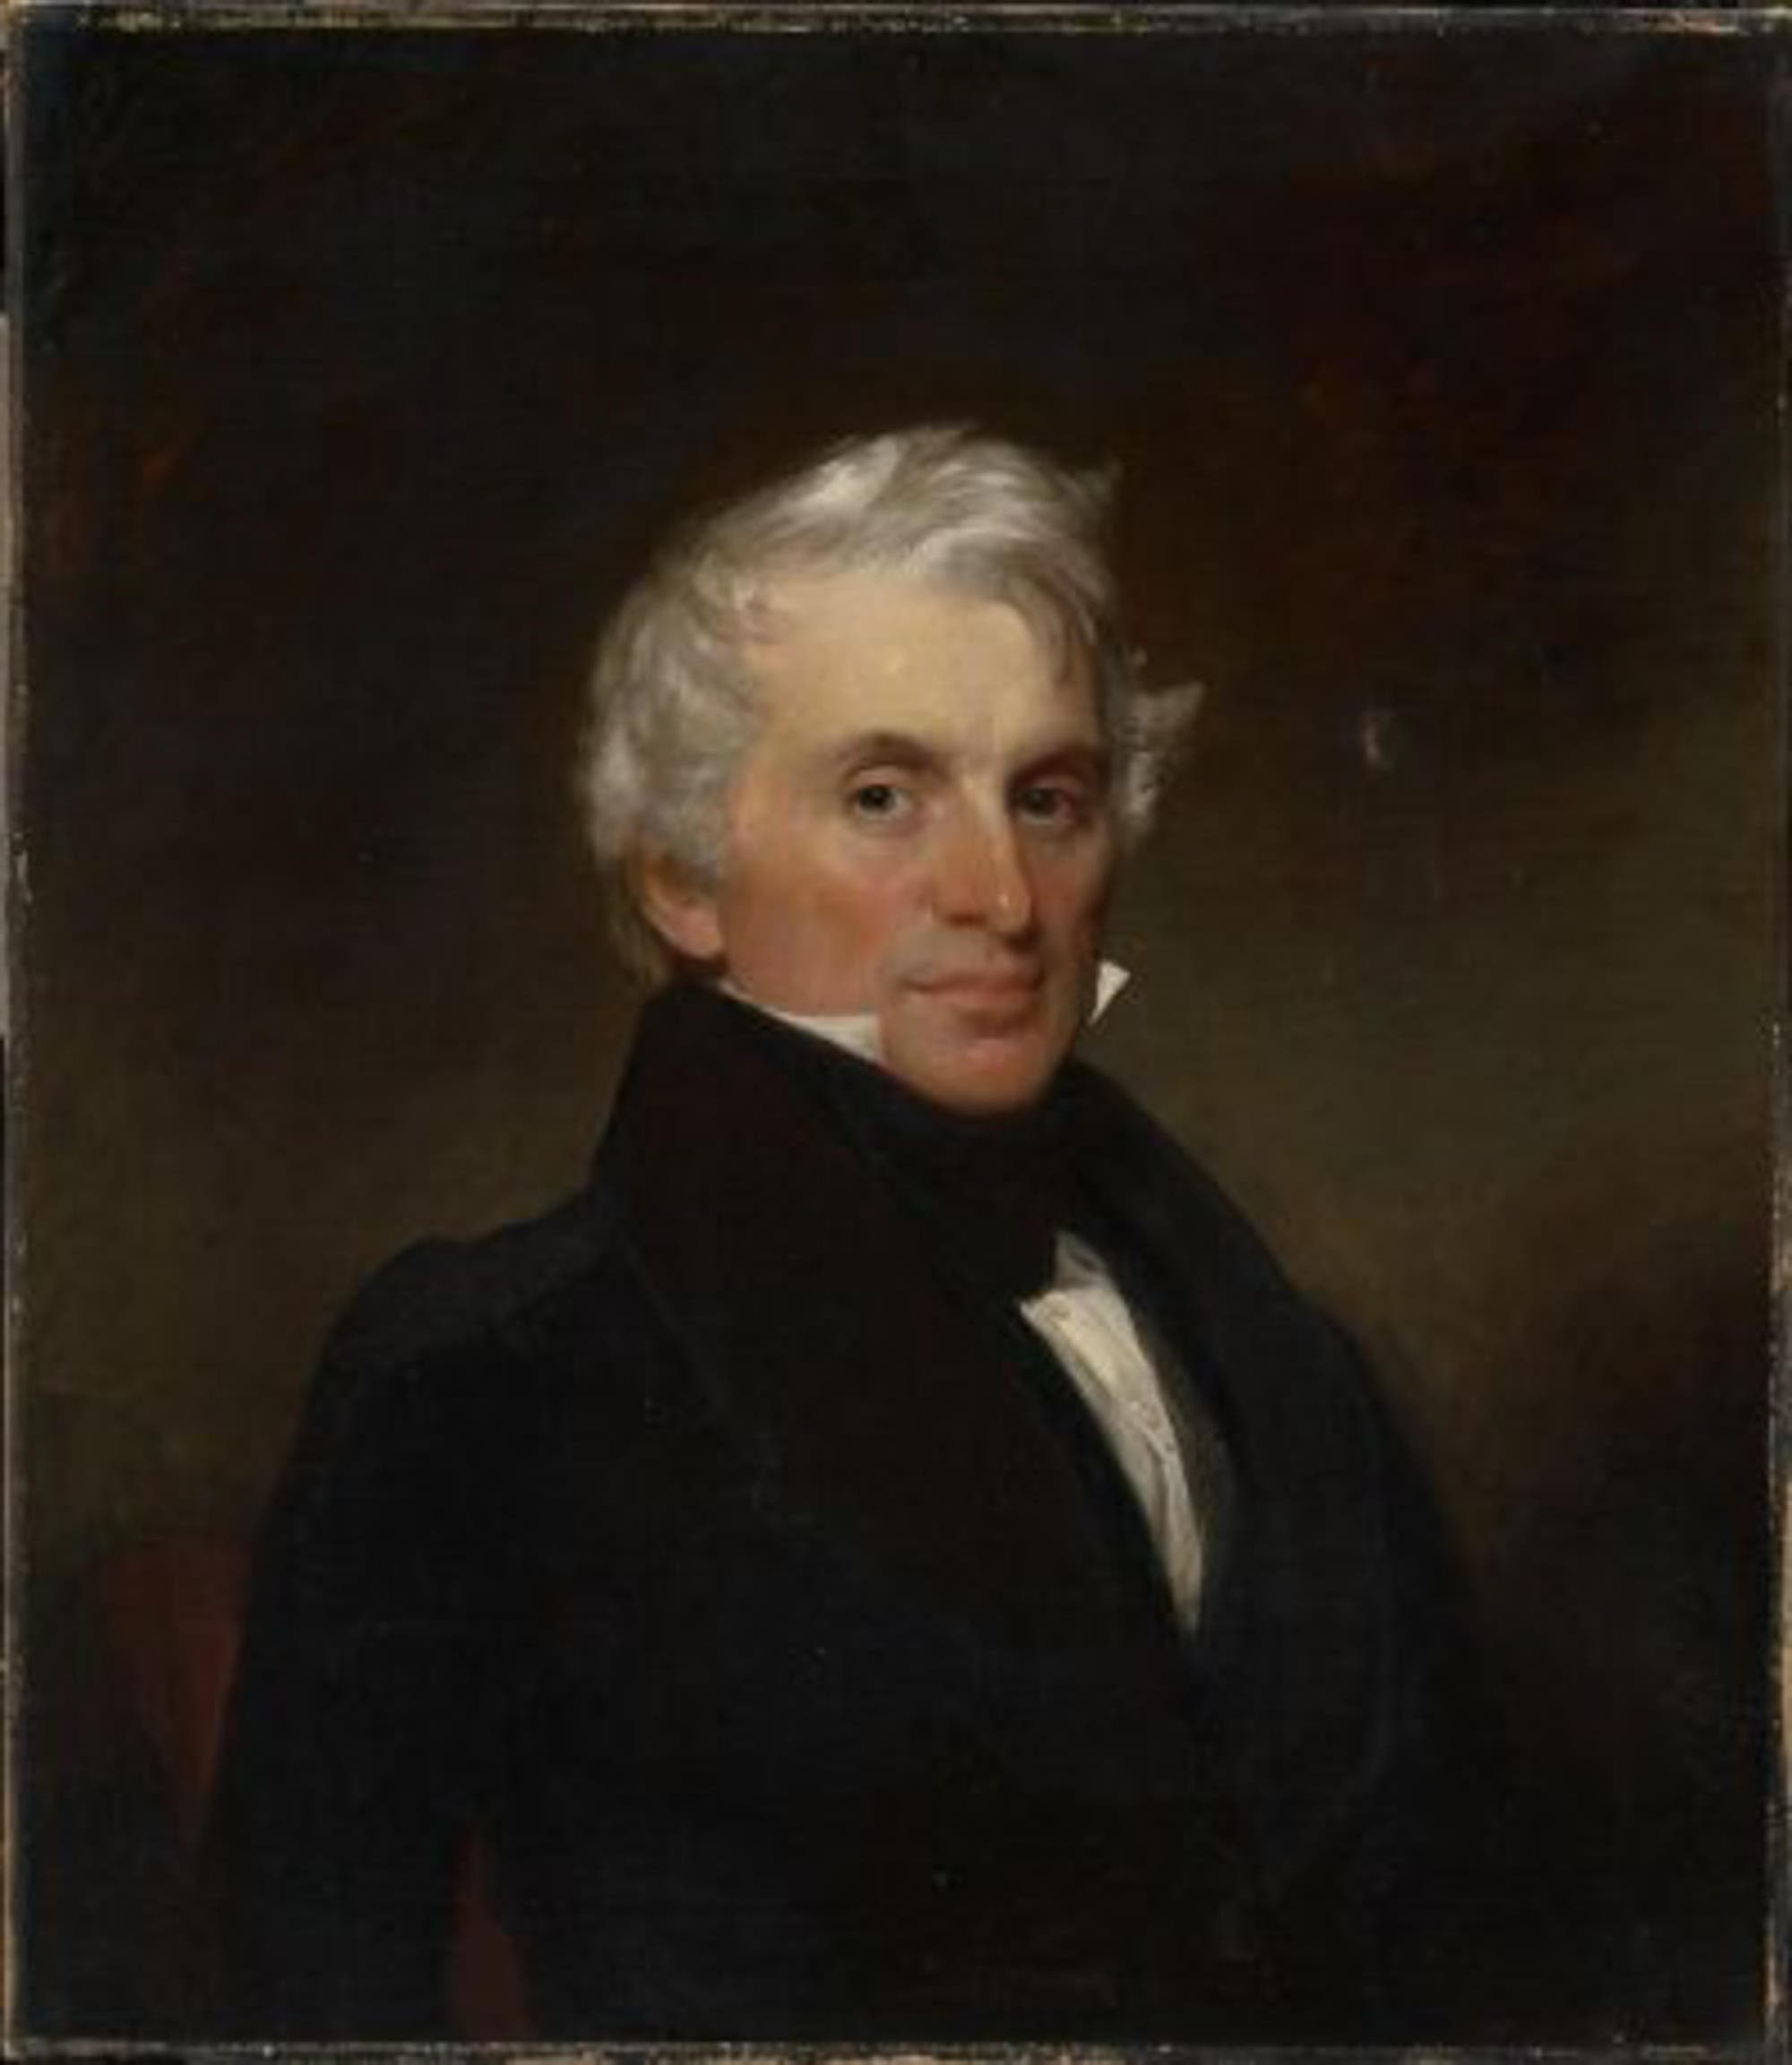 Frederic Tudor baute im 19. Jahrhundert in den USA ein Eishandelsimperium auf. Das Porträt des Malers Francis Alexander zeigt den Unternehmer um 1830.